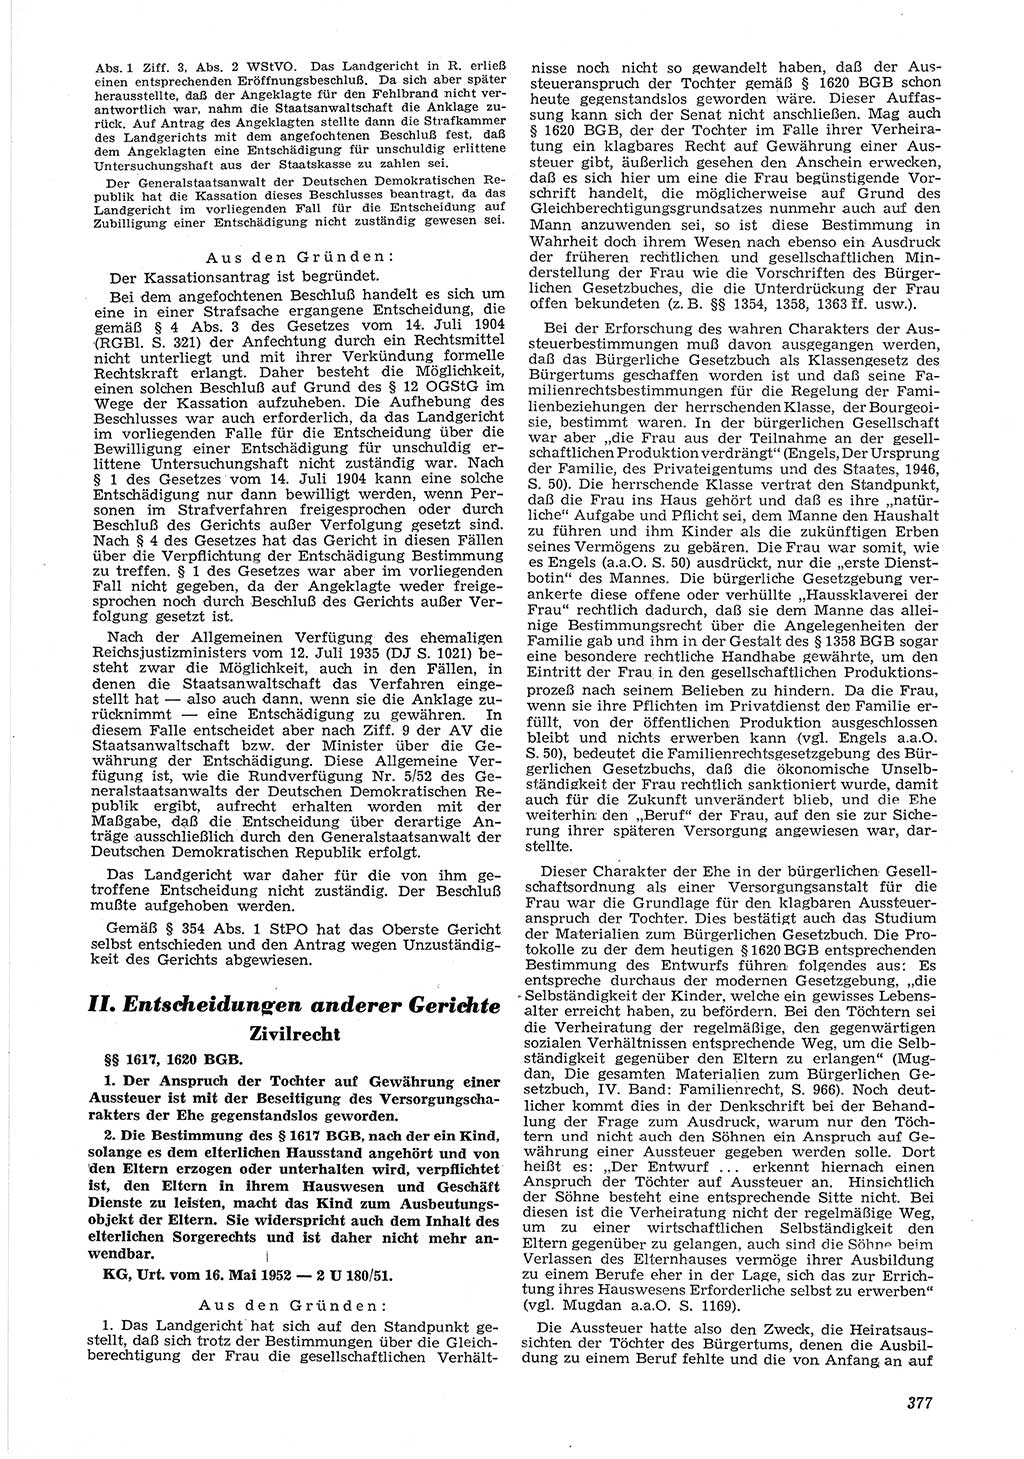 Neue Justiz (NJ), Zeitschrift für Recht und Rechtswissenschaft [Deutsche Demokratische Republik (DDR)], 6. Jahrgang 1952, Seite 377 (NJ DDR 1952, S. 377)